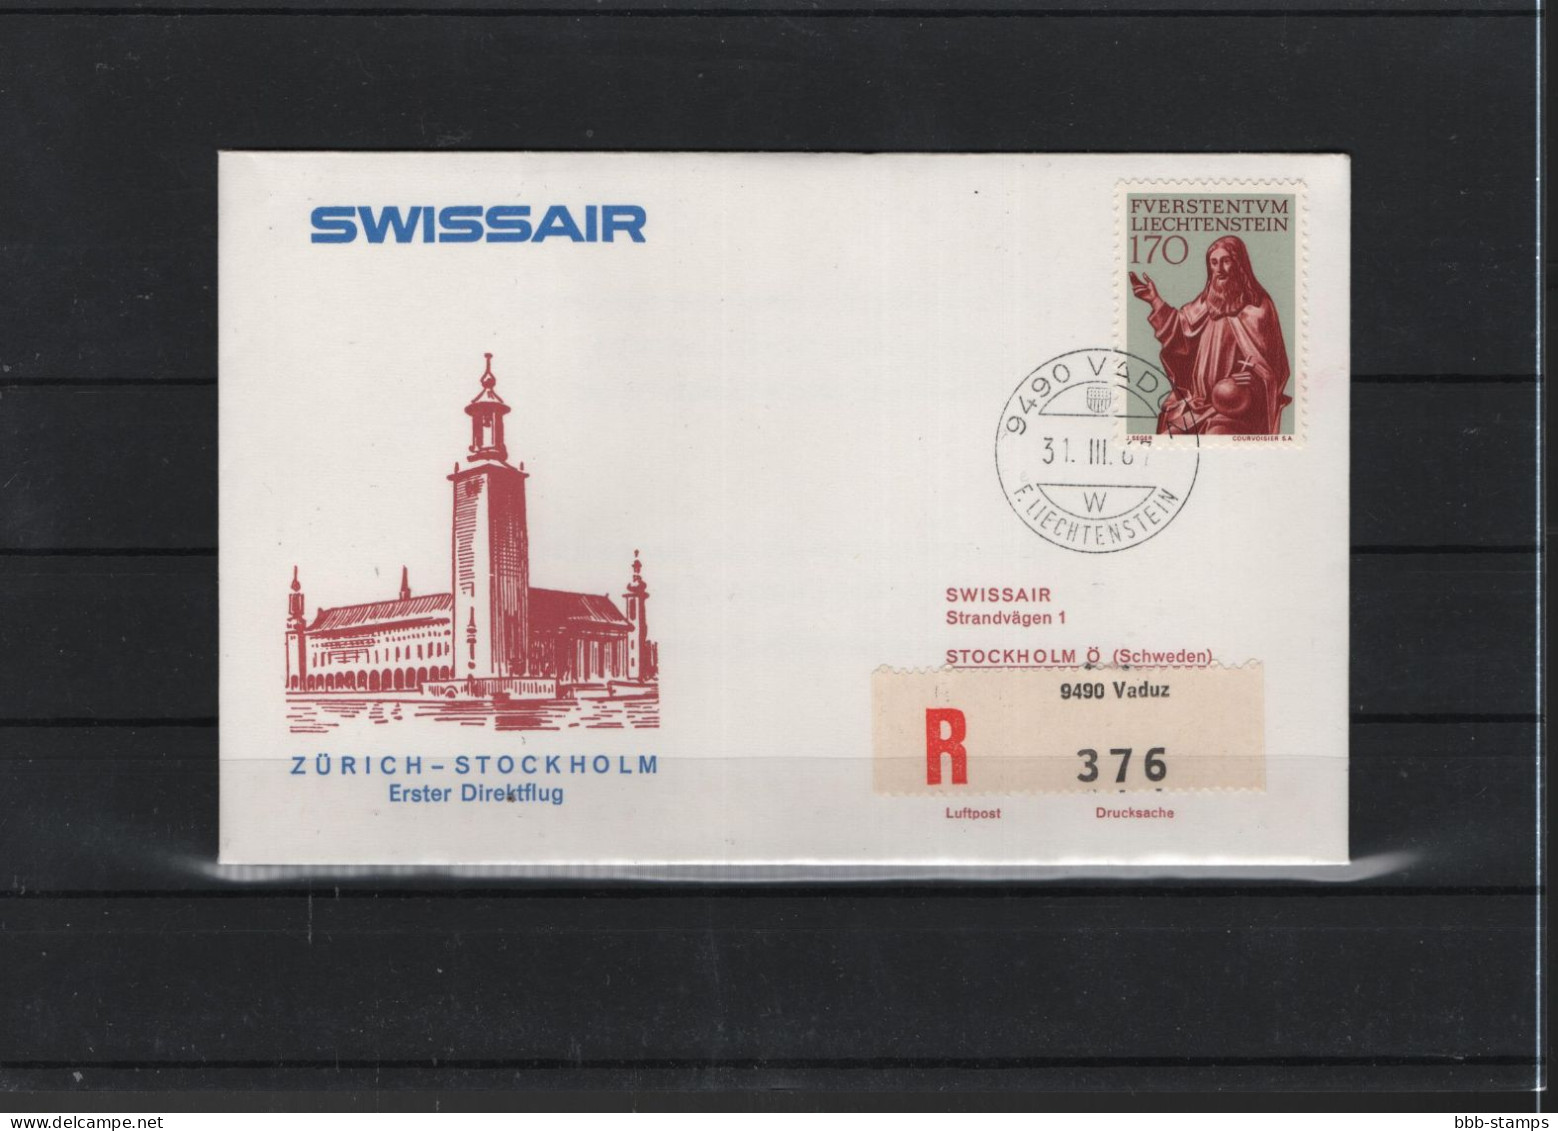 Schweiz Air Mail Swissair  FFC  31.3.1967 Zürich - Stockholm - Primi Voli